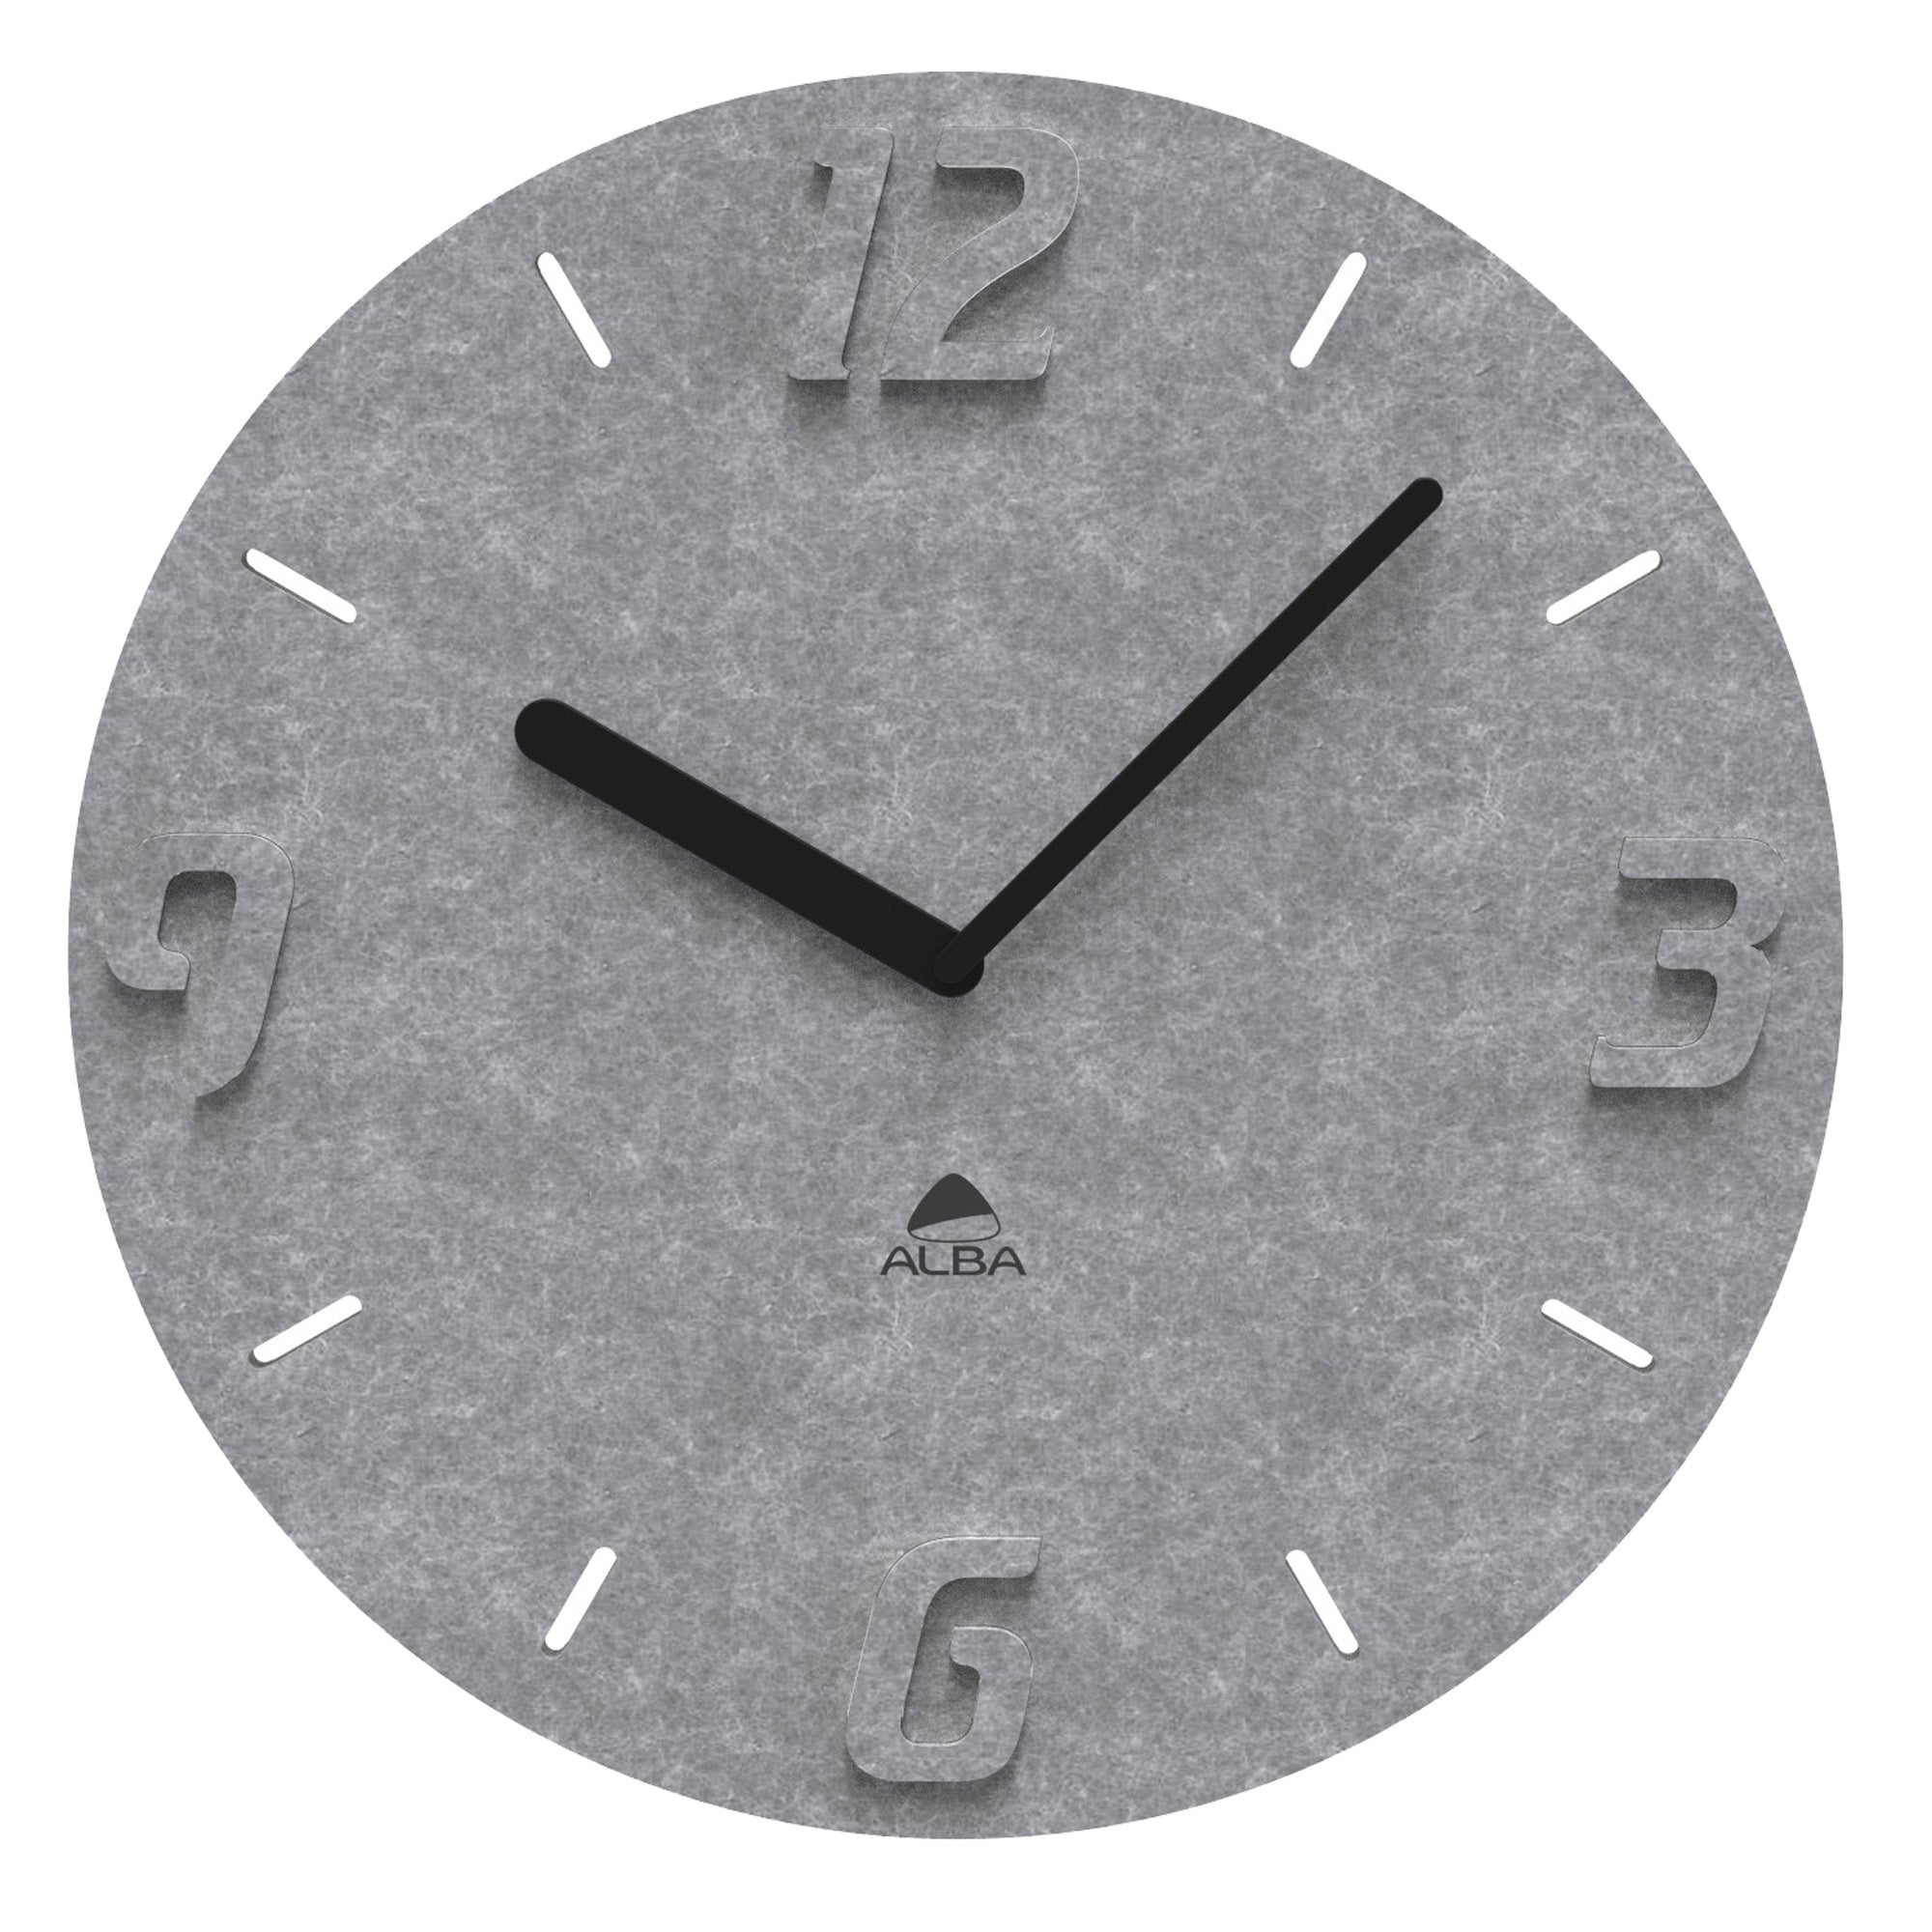 alba-orologio-parete-pet-effetto-3d-d55cm-grigio